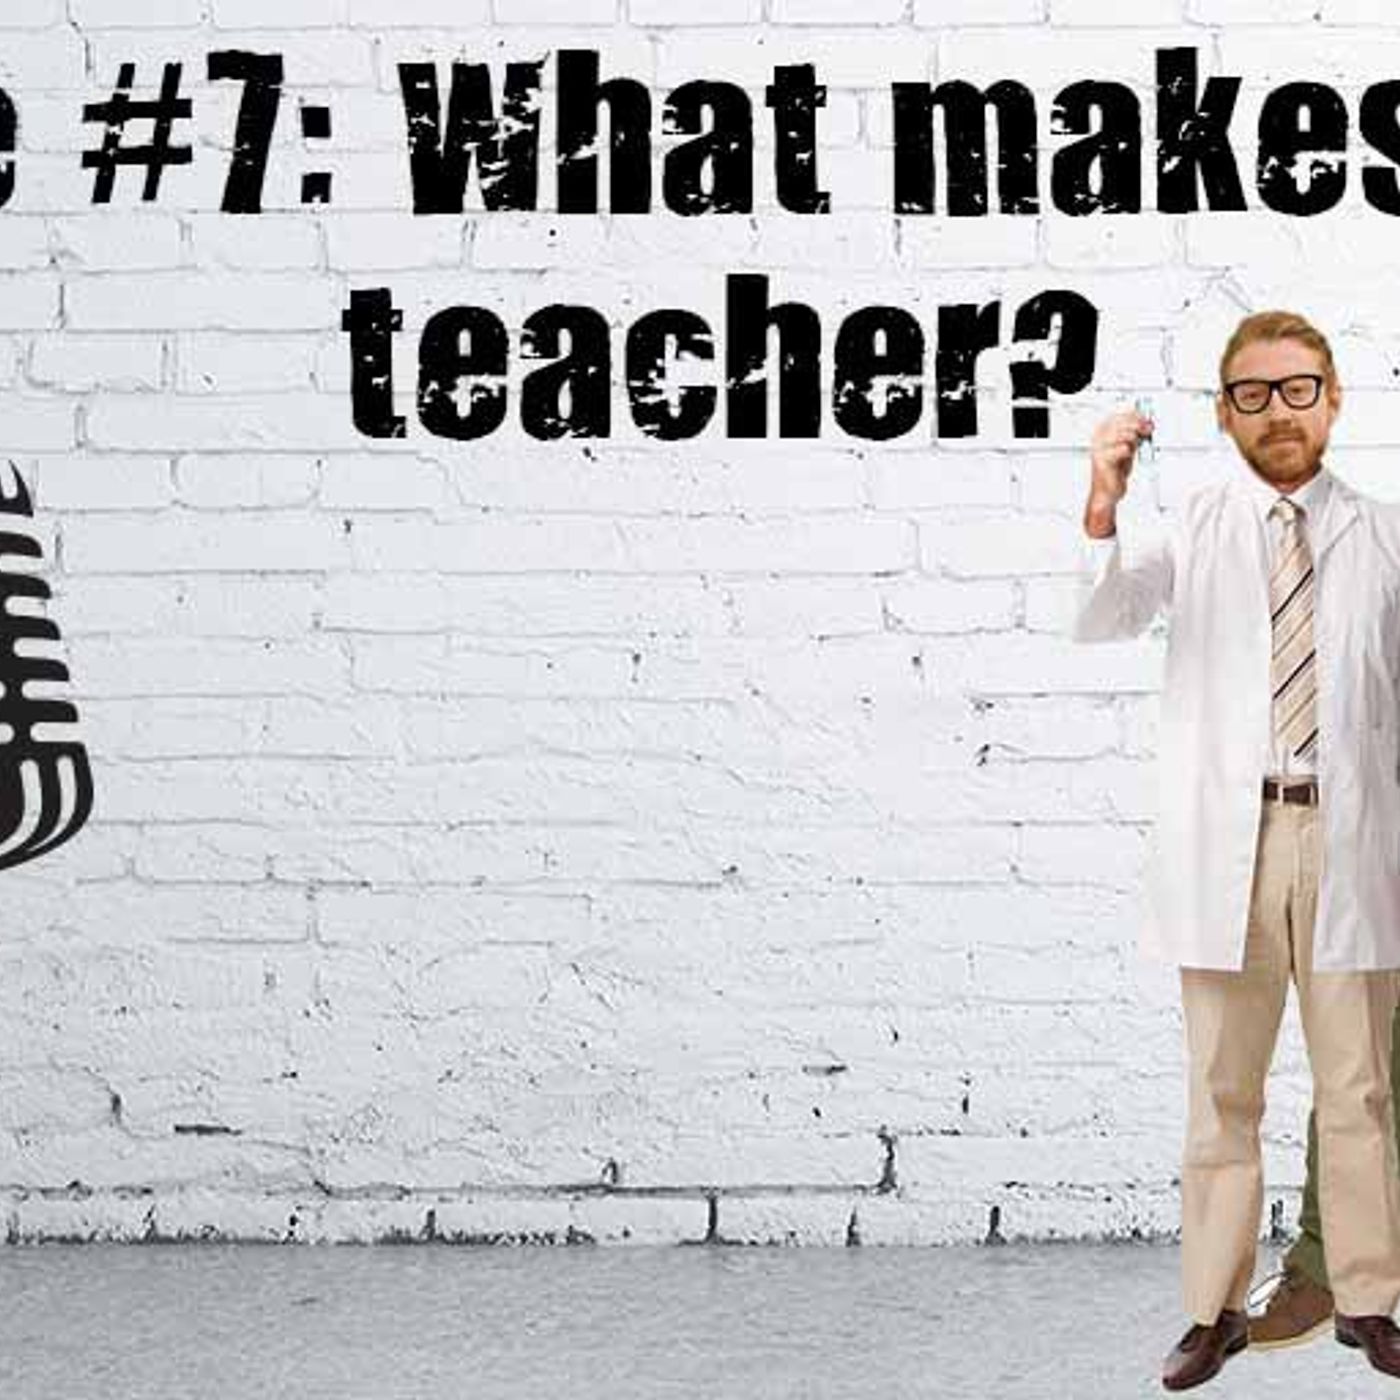 S1 Ep7: What Makes A Good Teacher